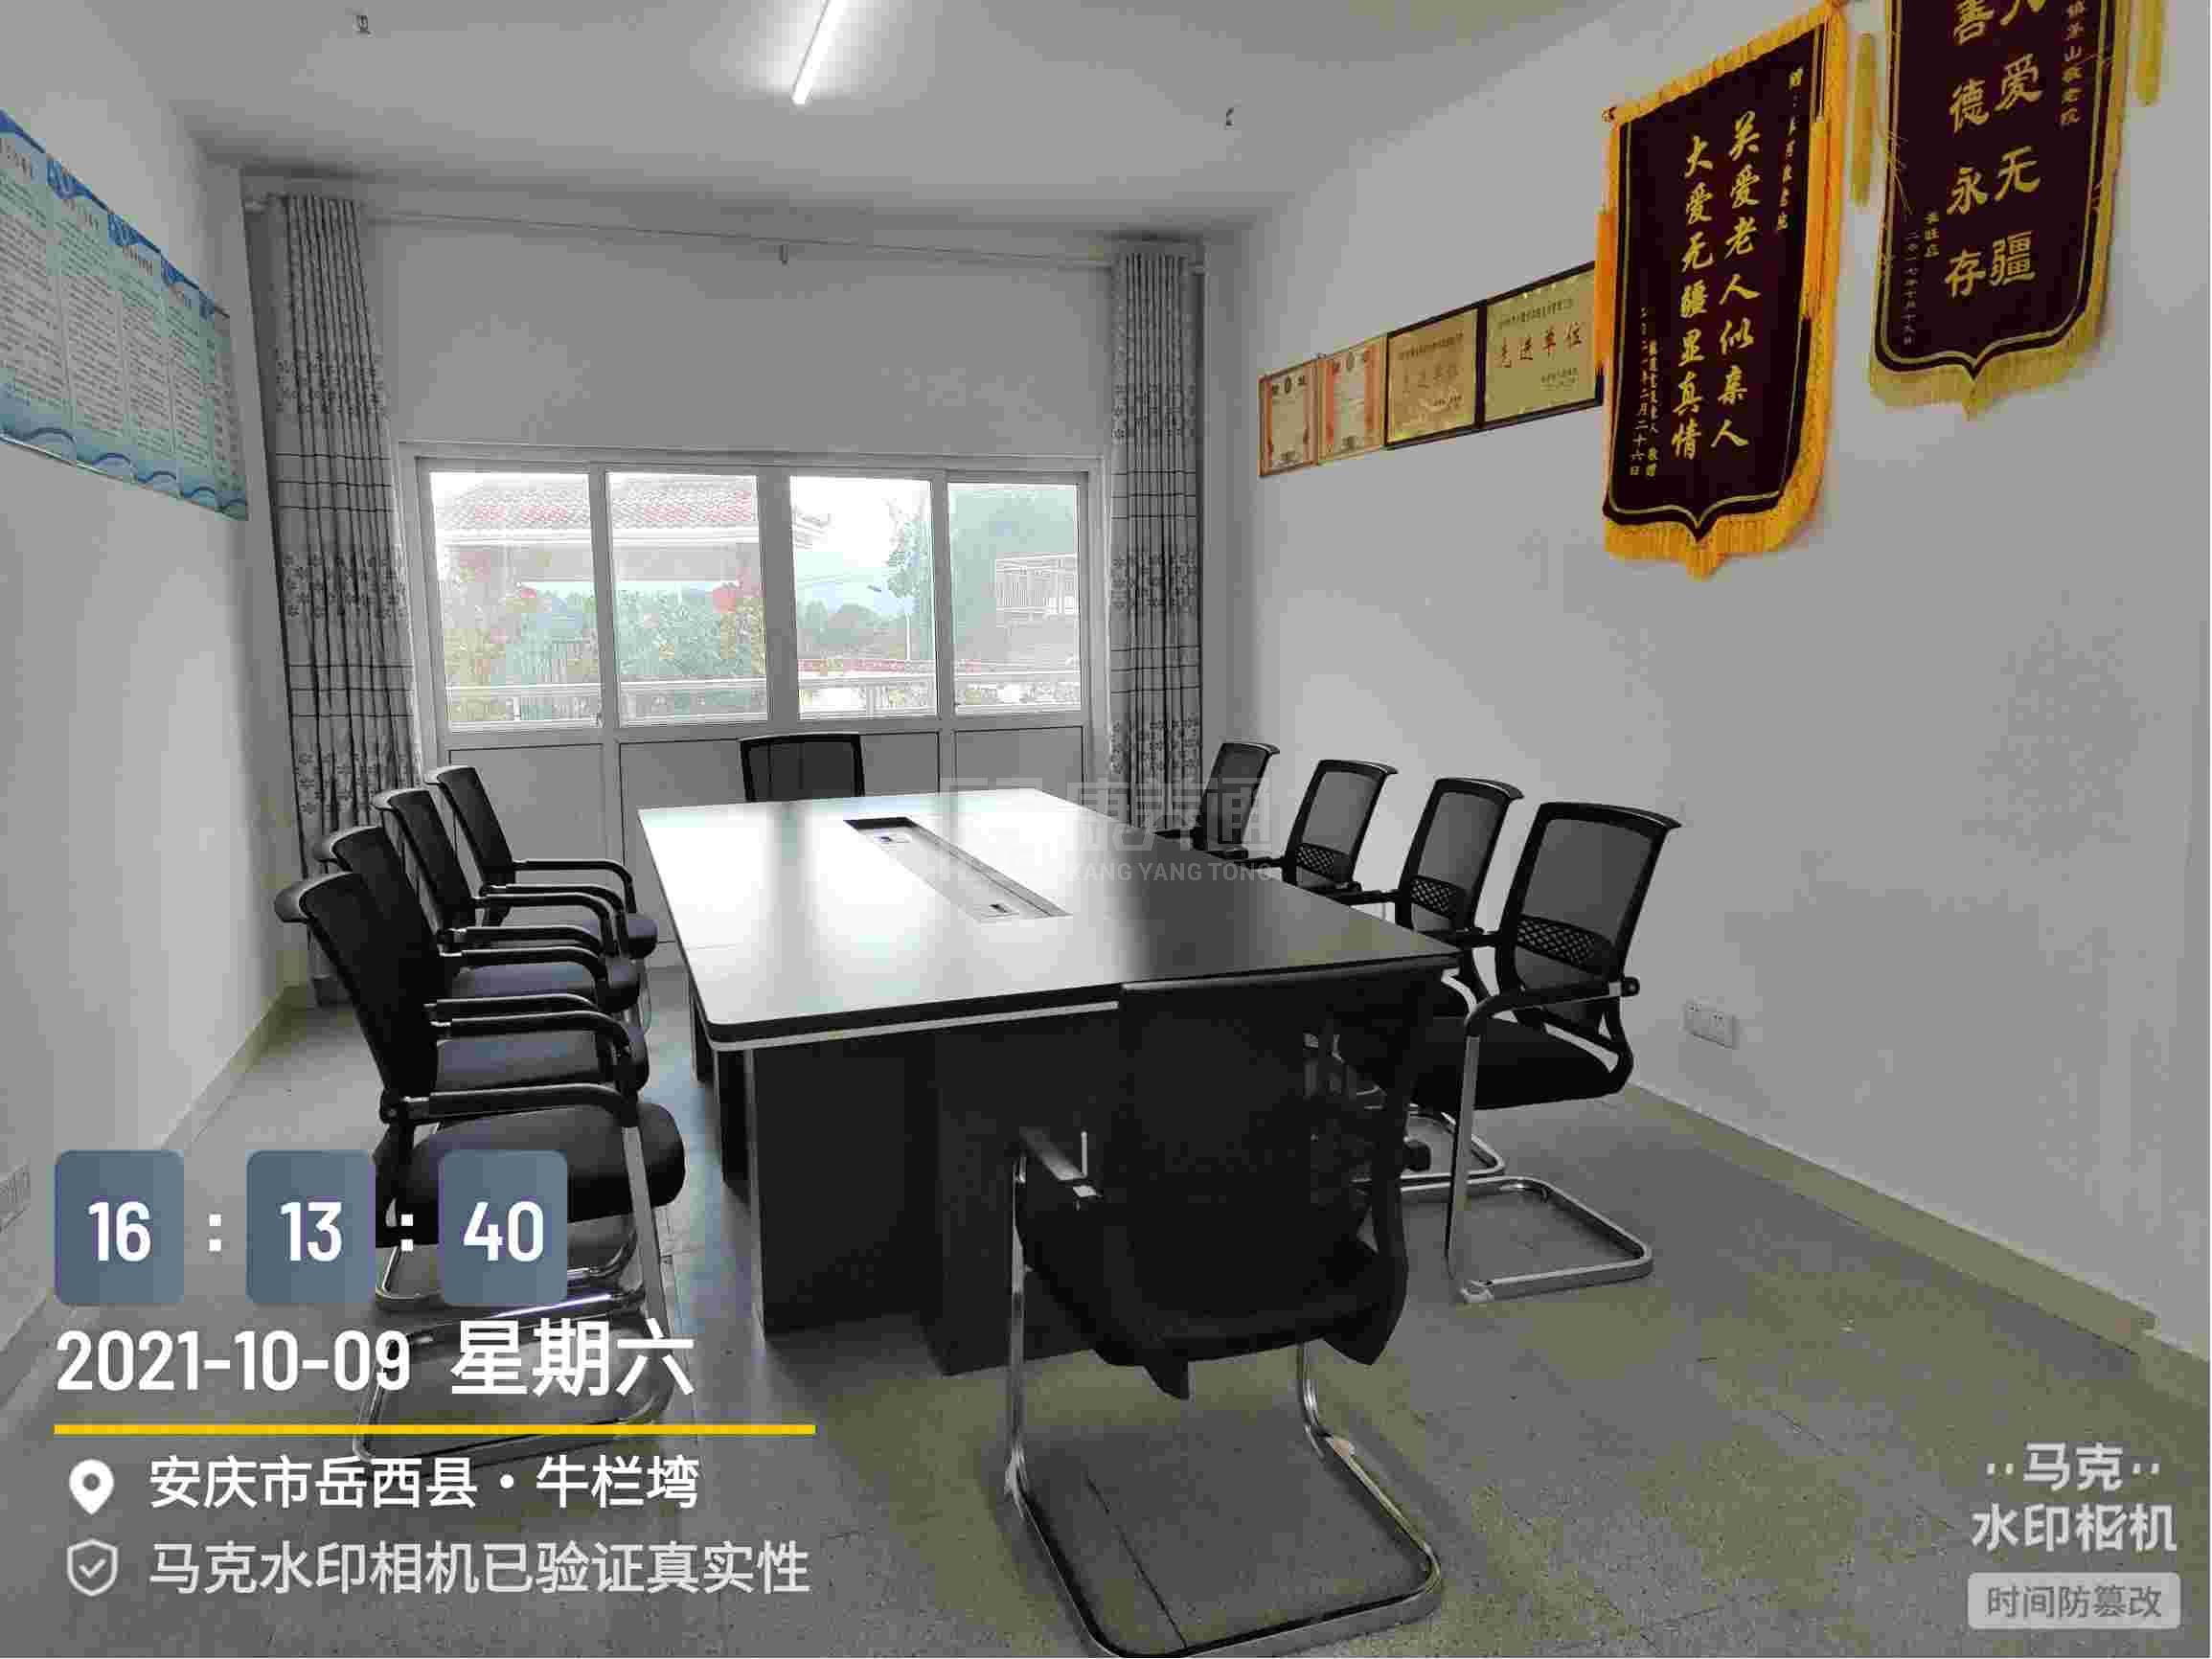 岳西县善源养老服务有限公司服务项目图3惬意的环境、感受岁月静好